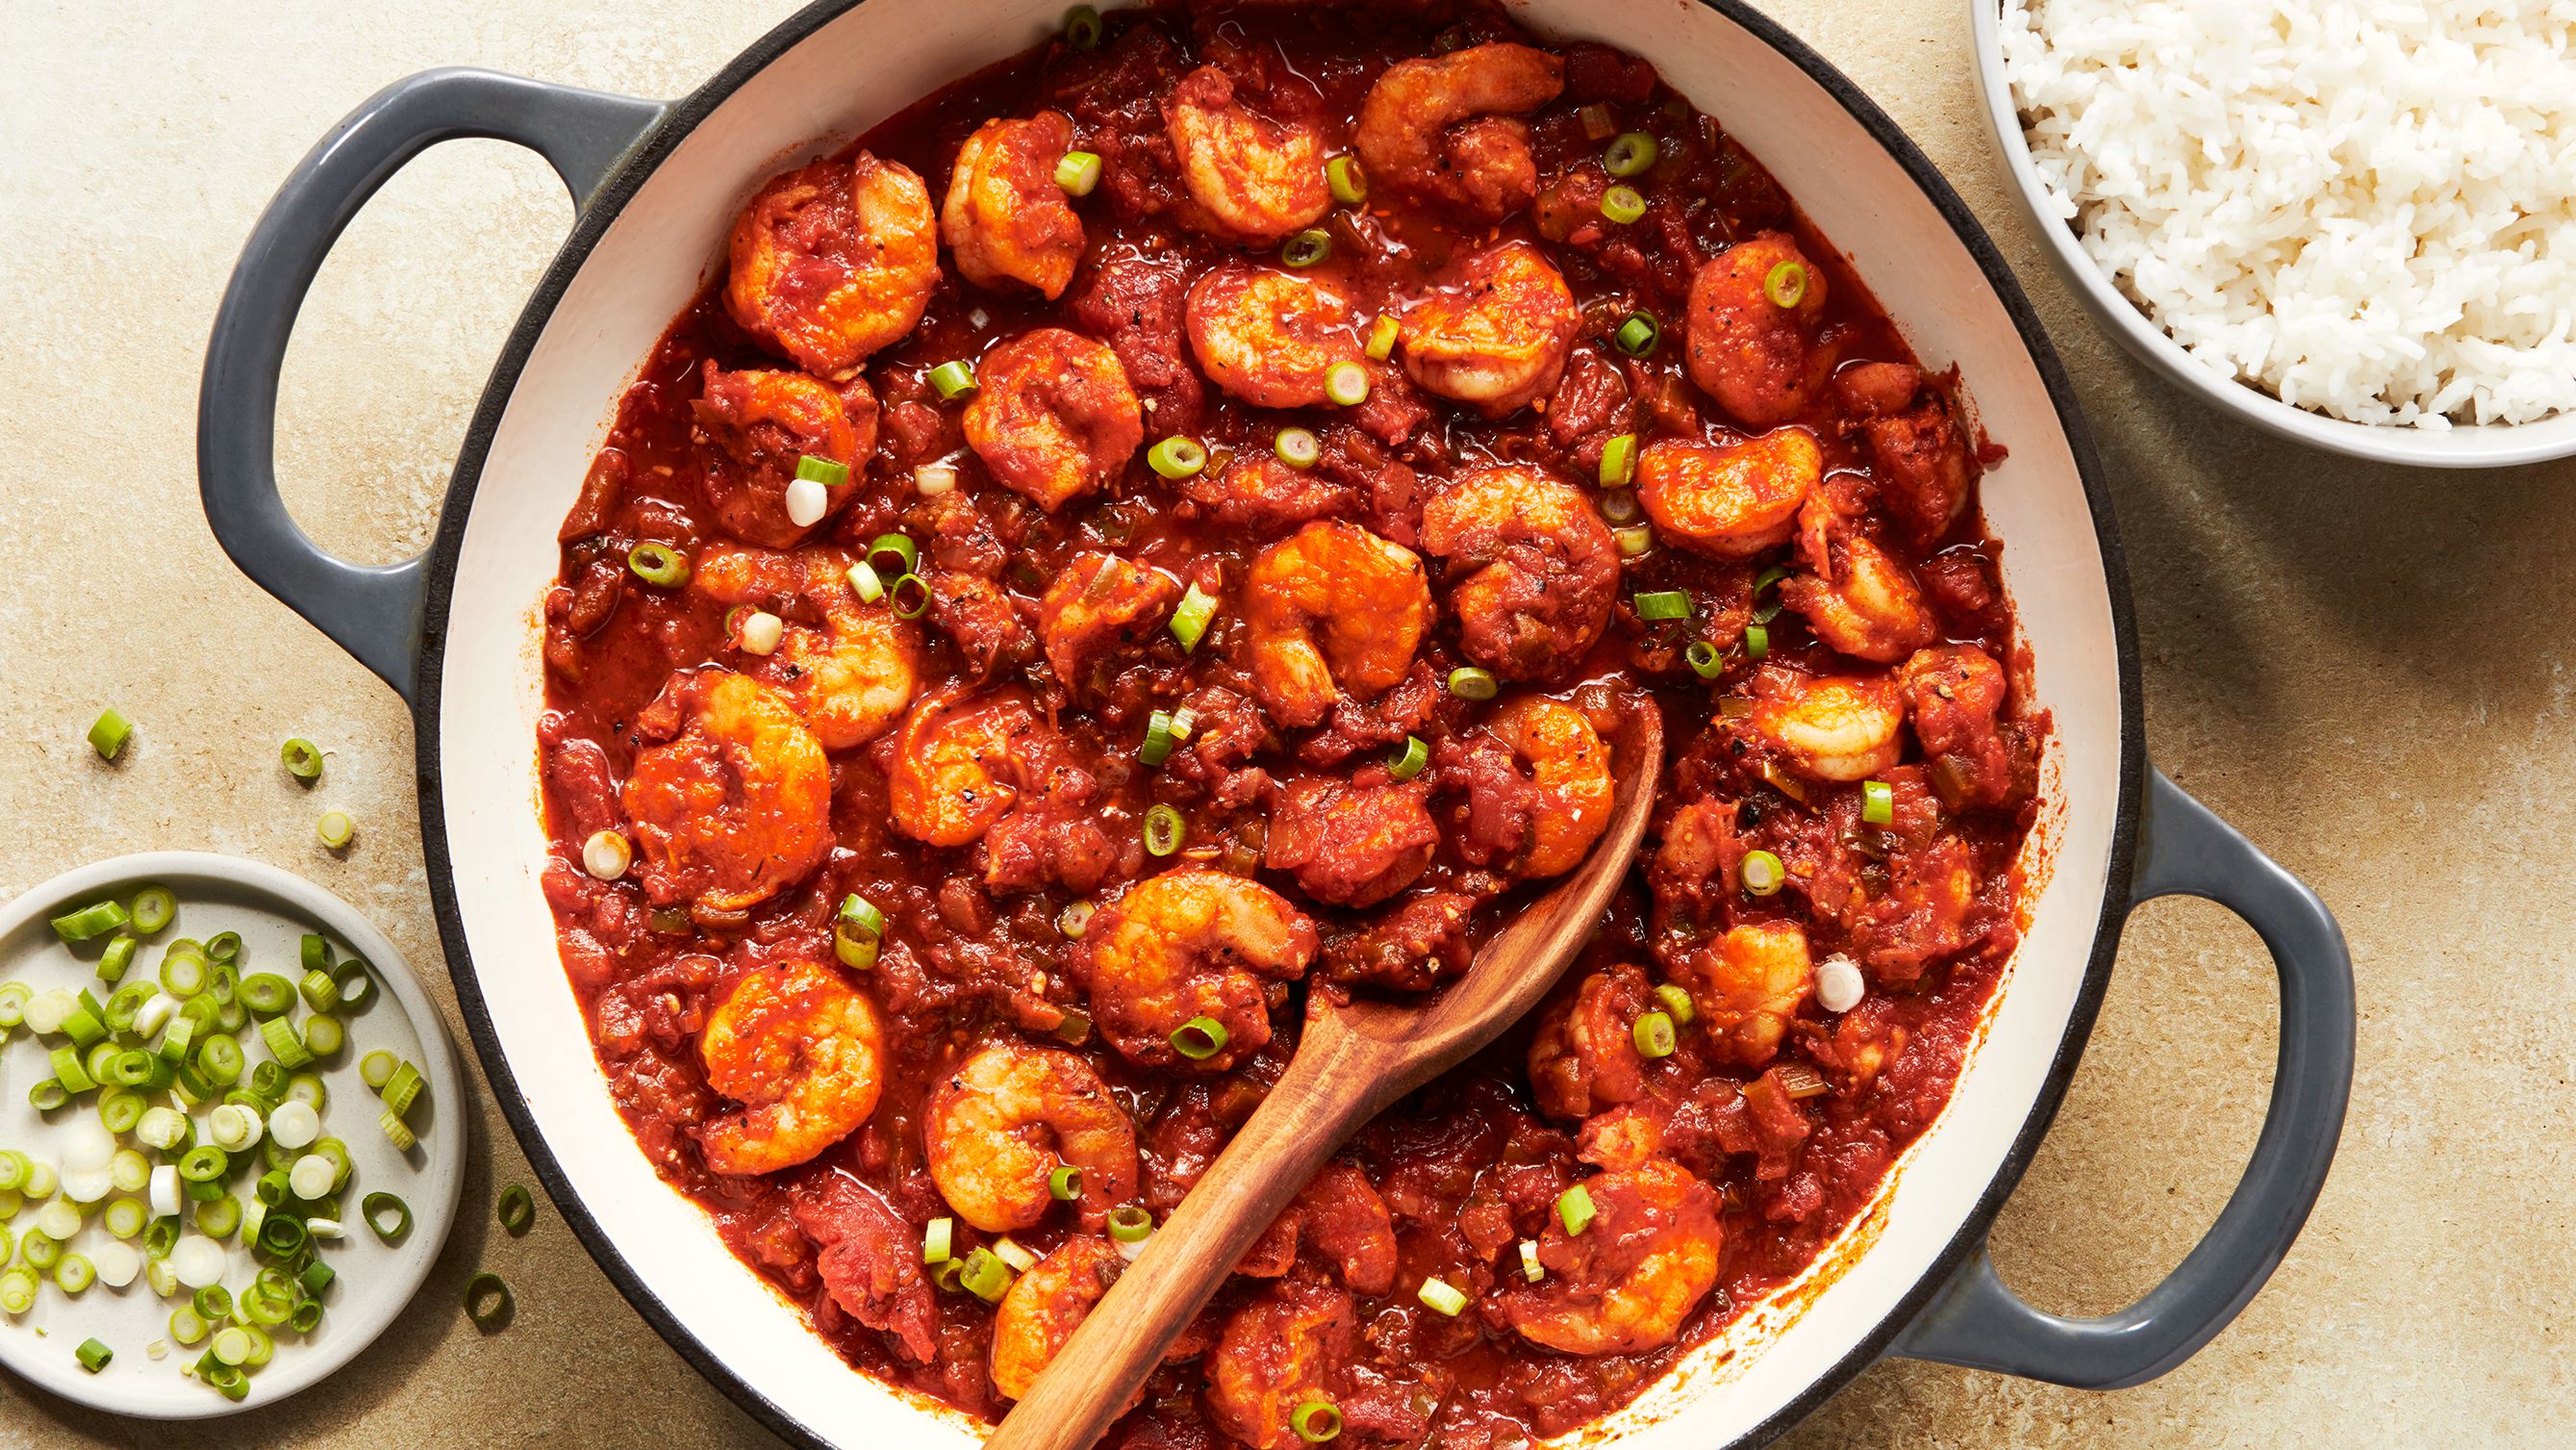 Best Shrimp Creole Recipe - How to Make Shrimp Creole